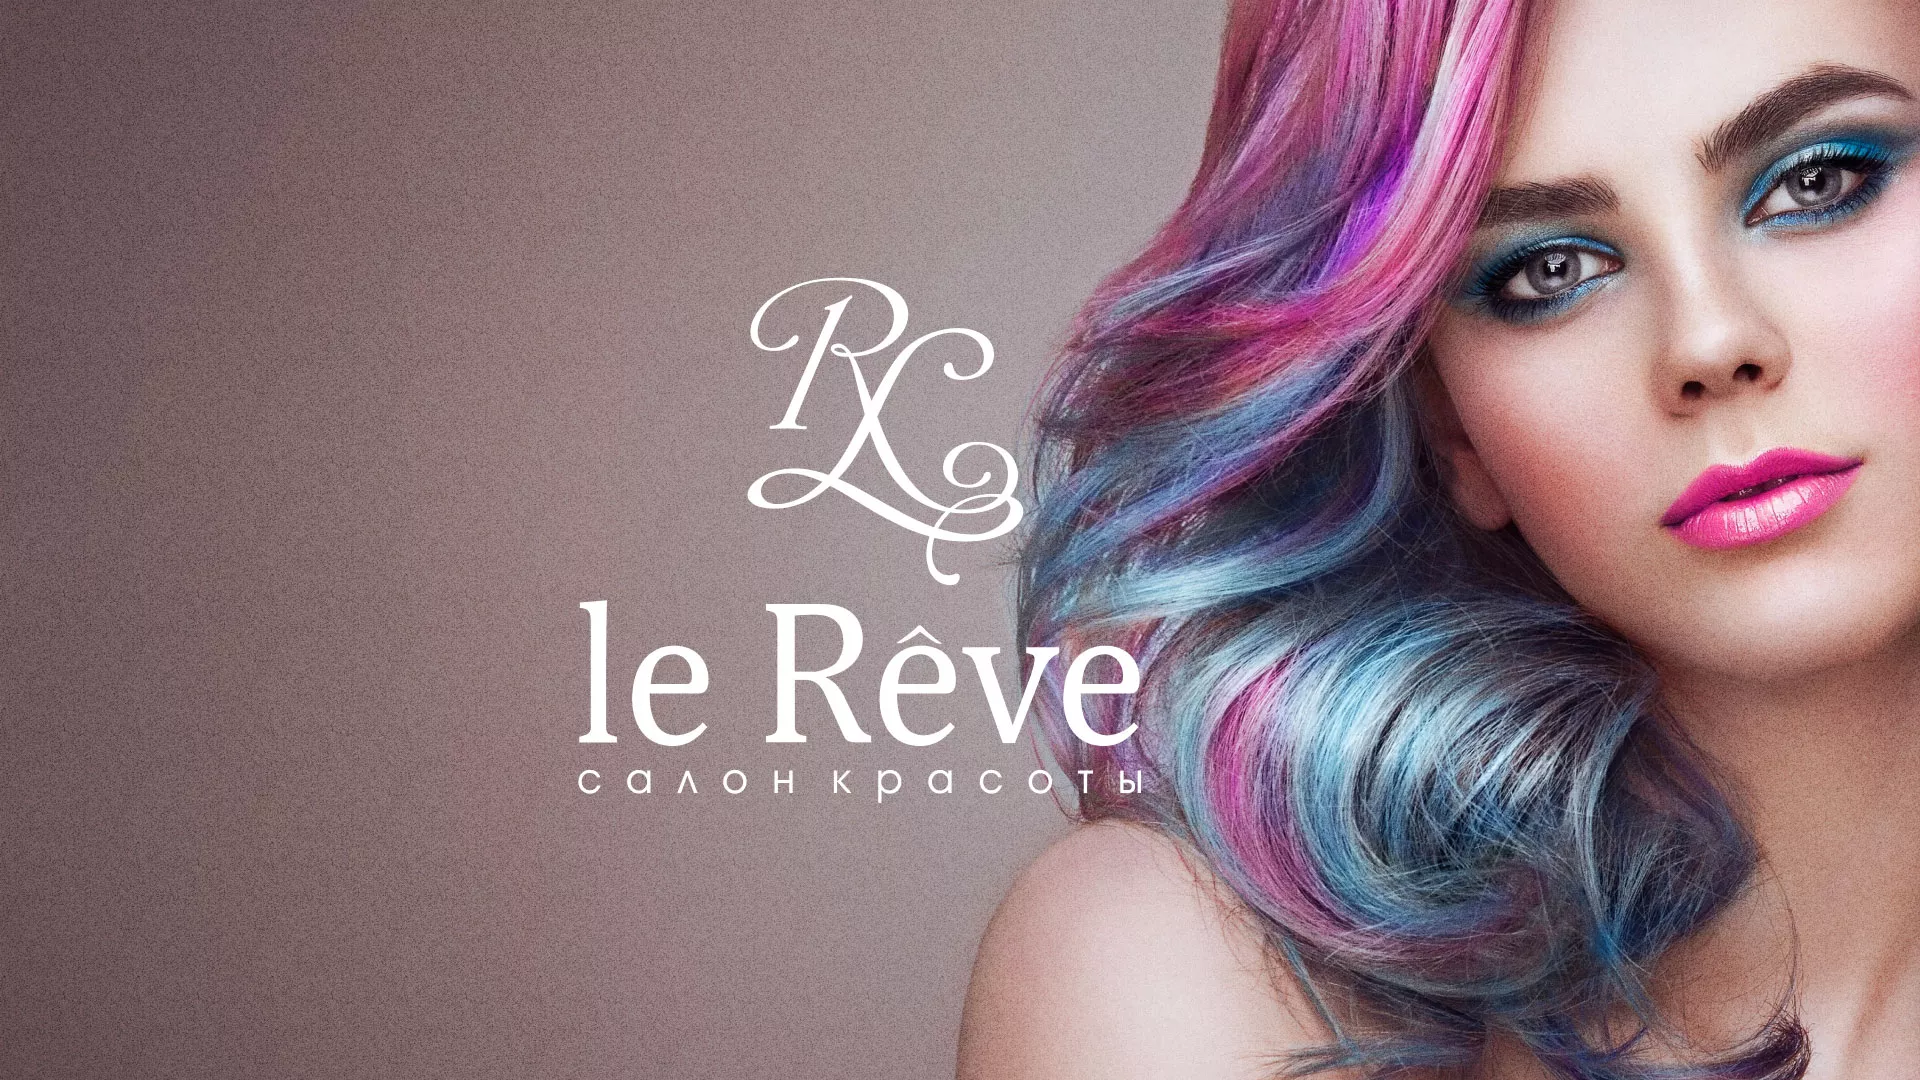 Создание сайта для салона красоты «Le Reve» в Зернограде